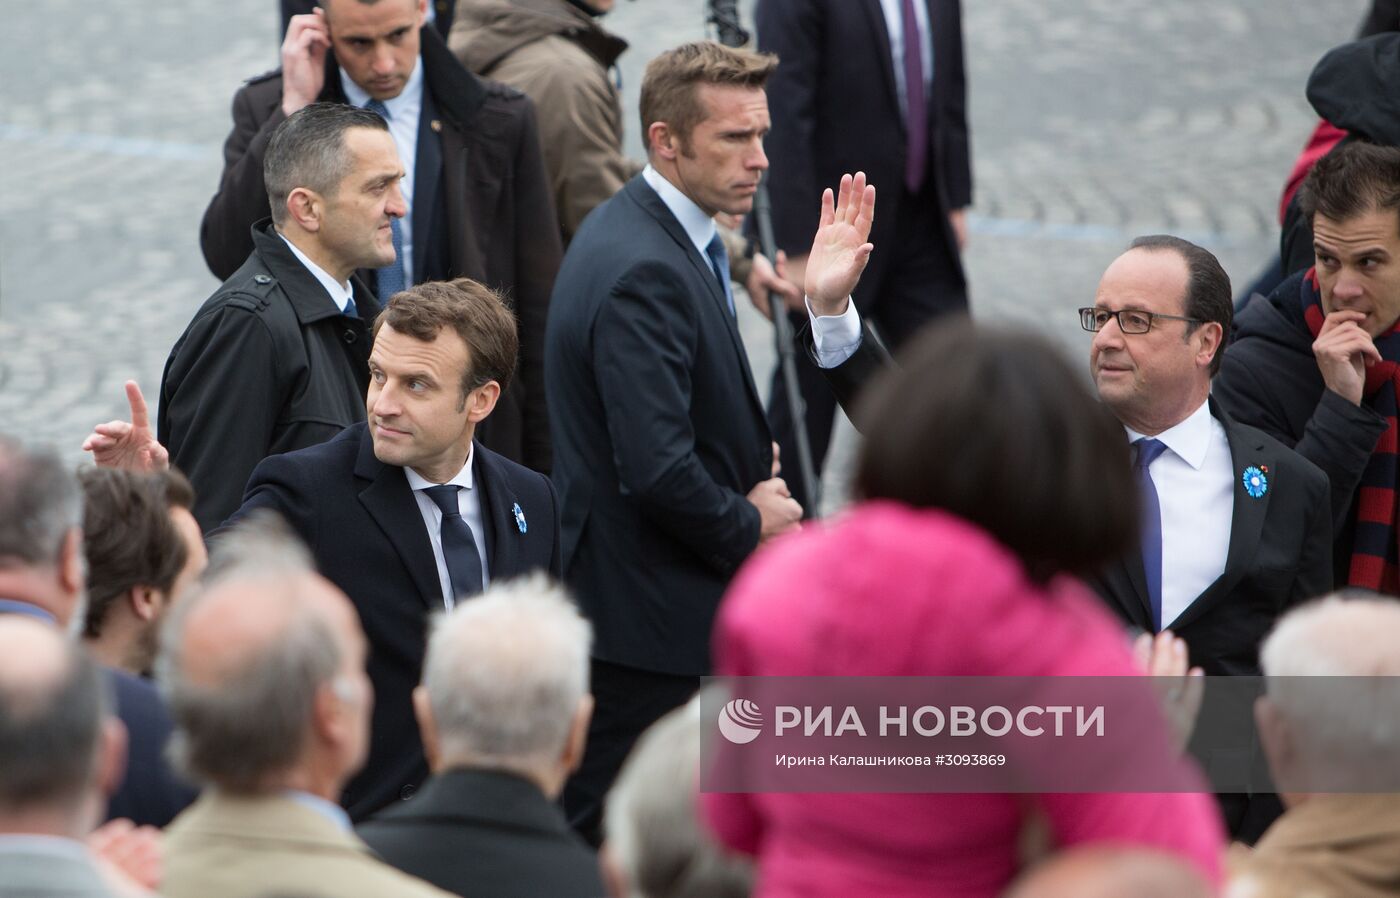 Президент Франции Ф. Олланд и избранный президент Франции Э. Макрон на церемонии празднования 72-ой годовщины Победы